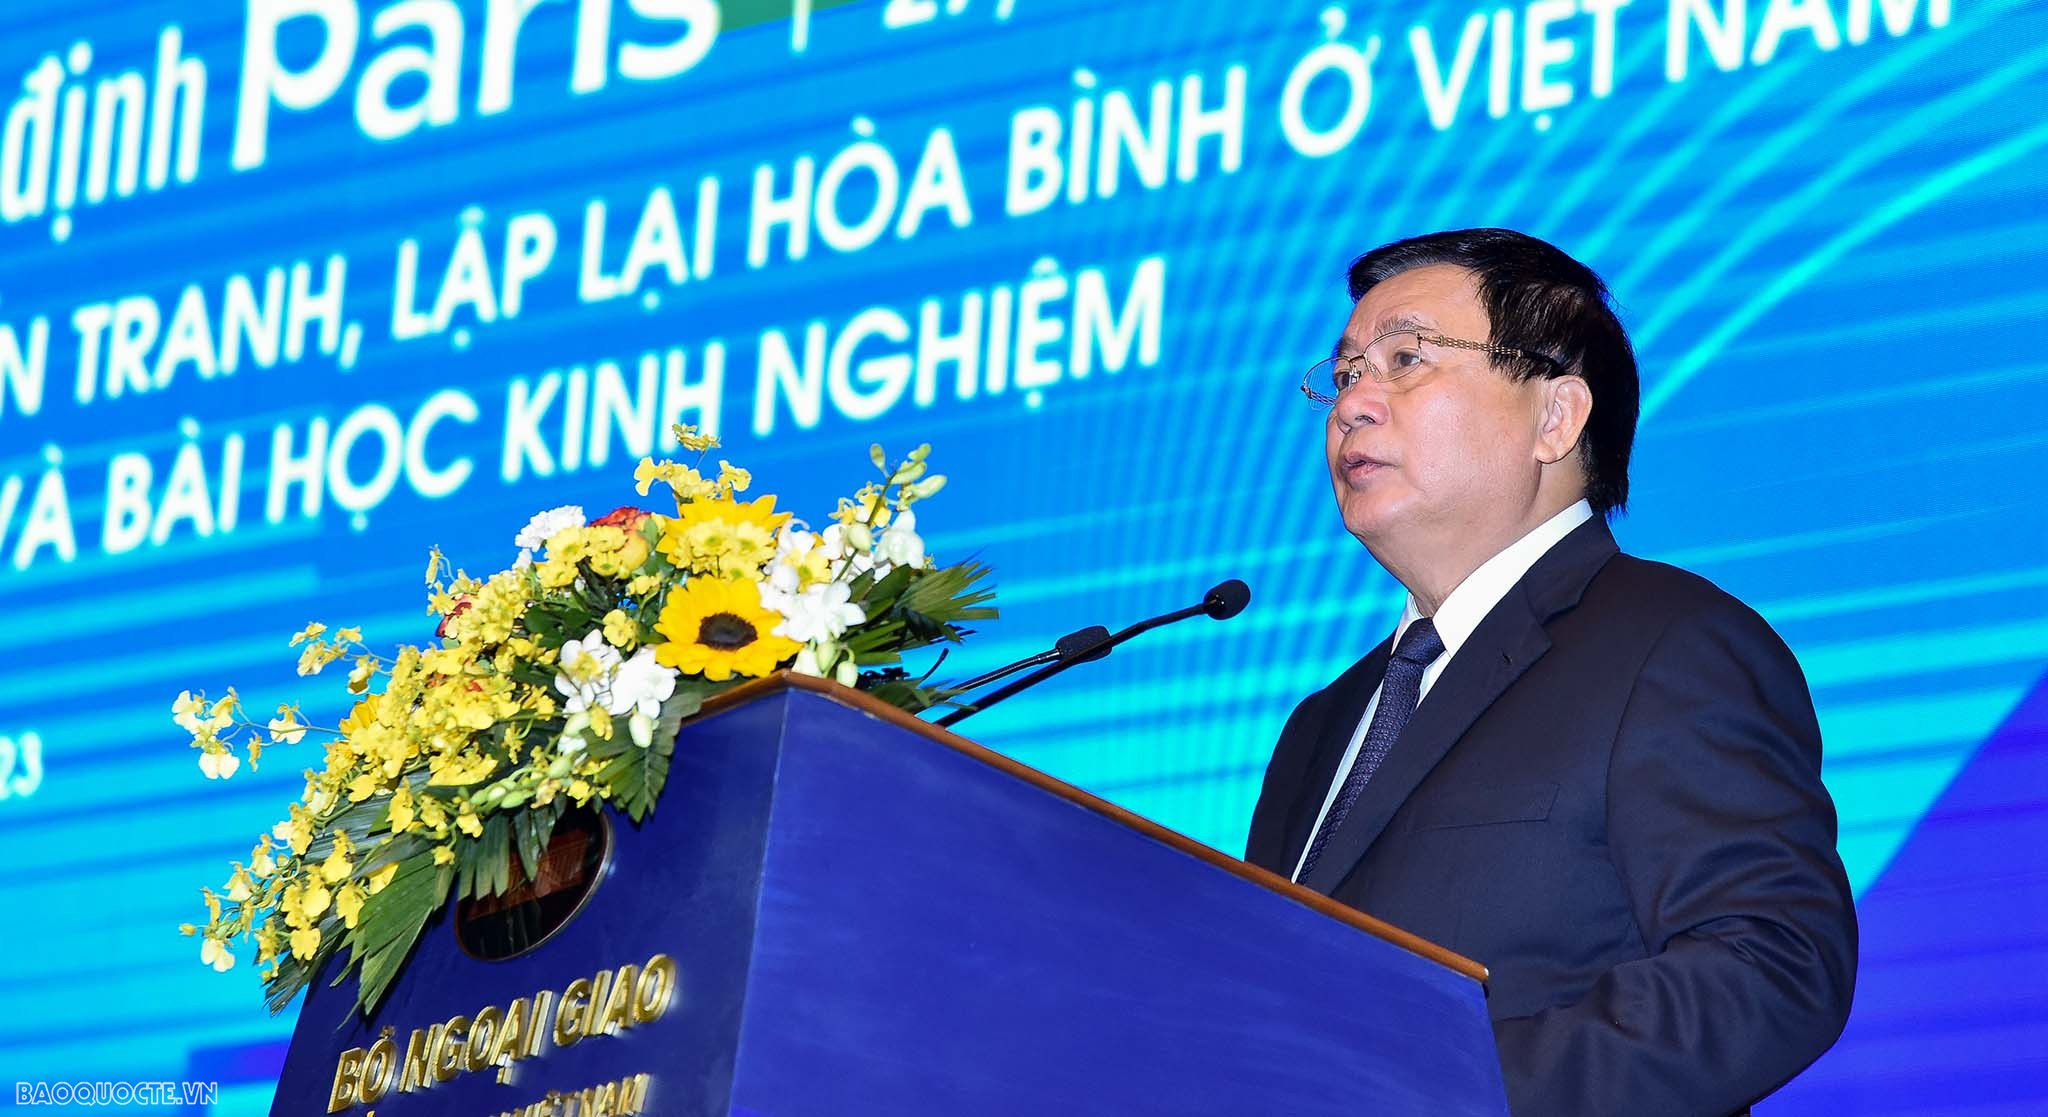 50 năm Hiệp định Paris: Bước ngoặt lịch sử, mốc son chói lọi của ngoại giao Việt Nam